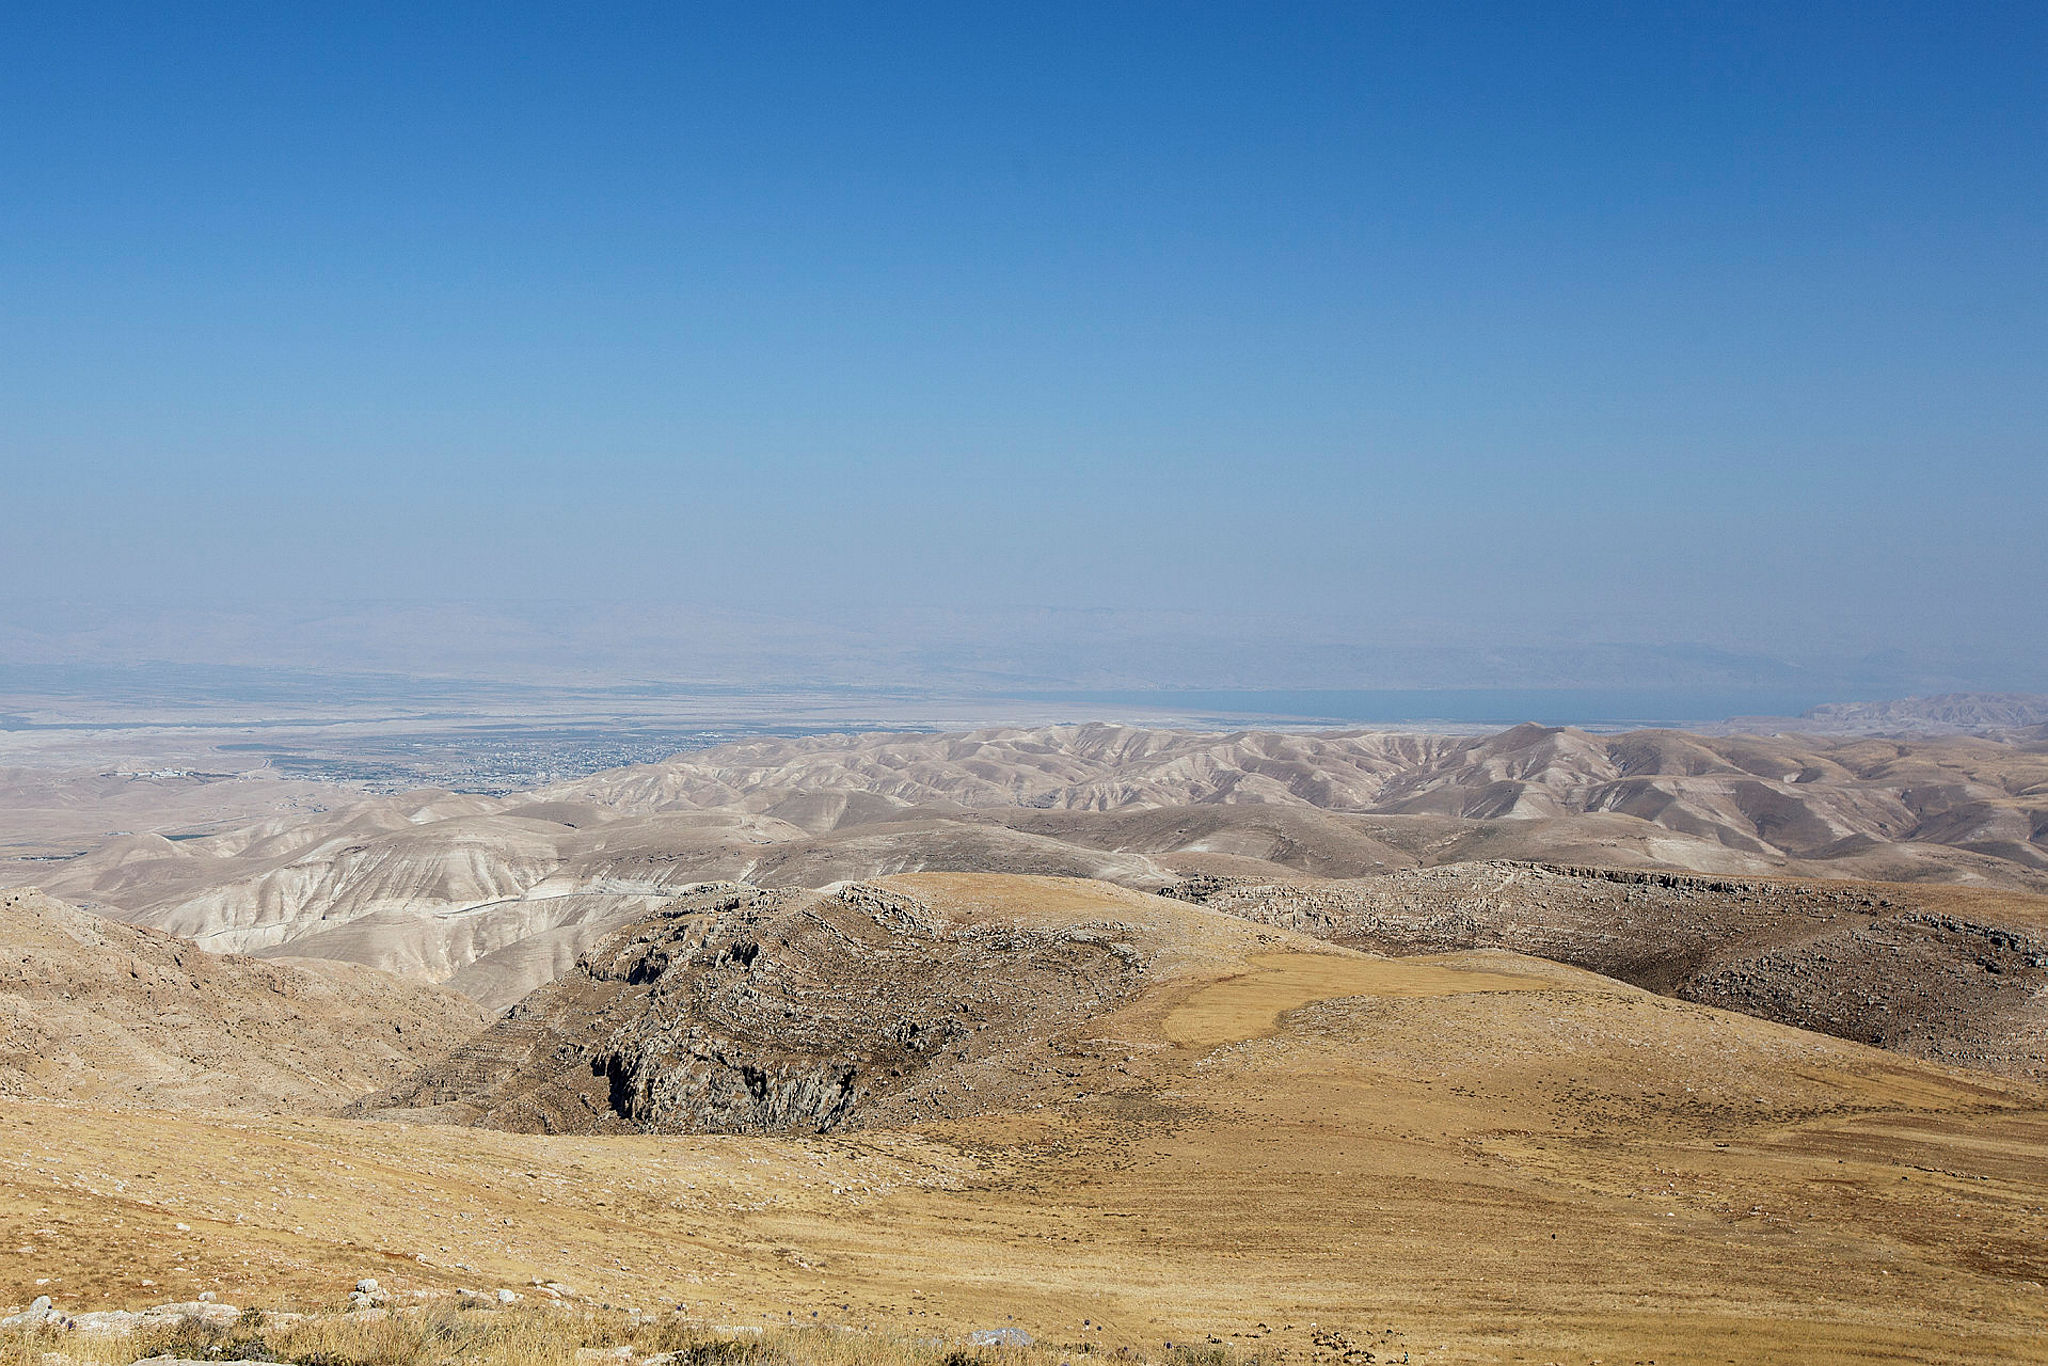 The Judaean Desert